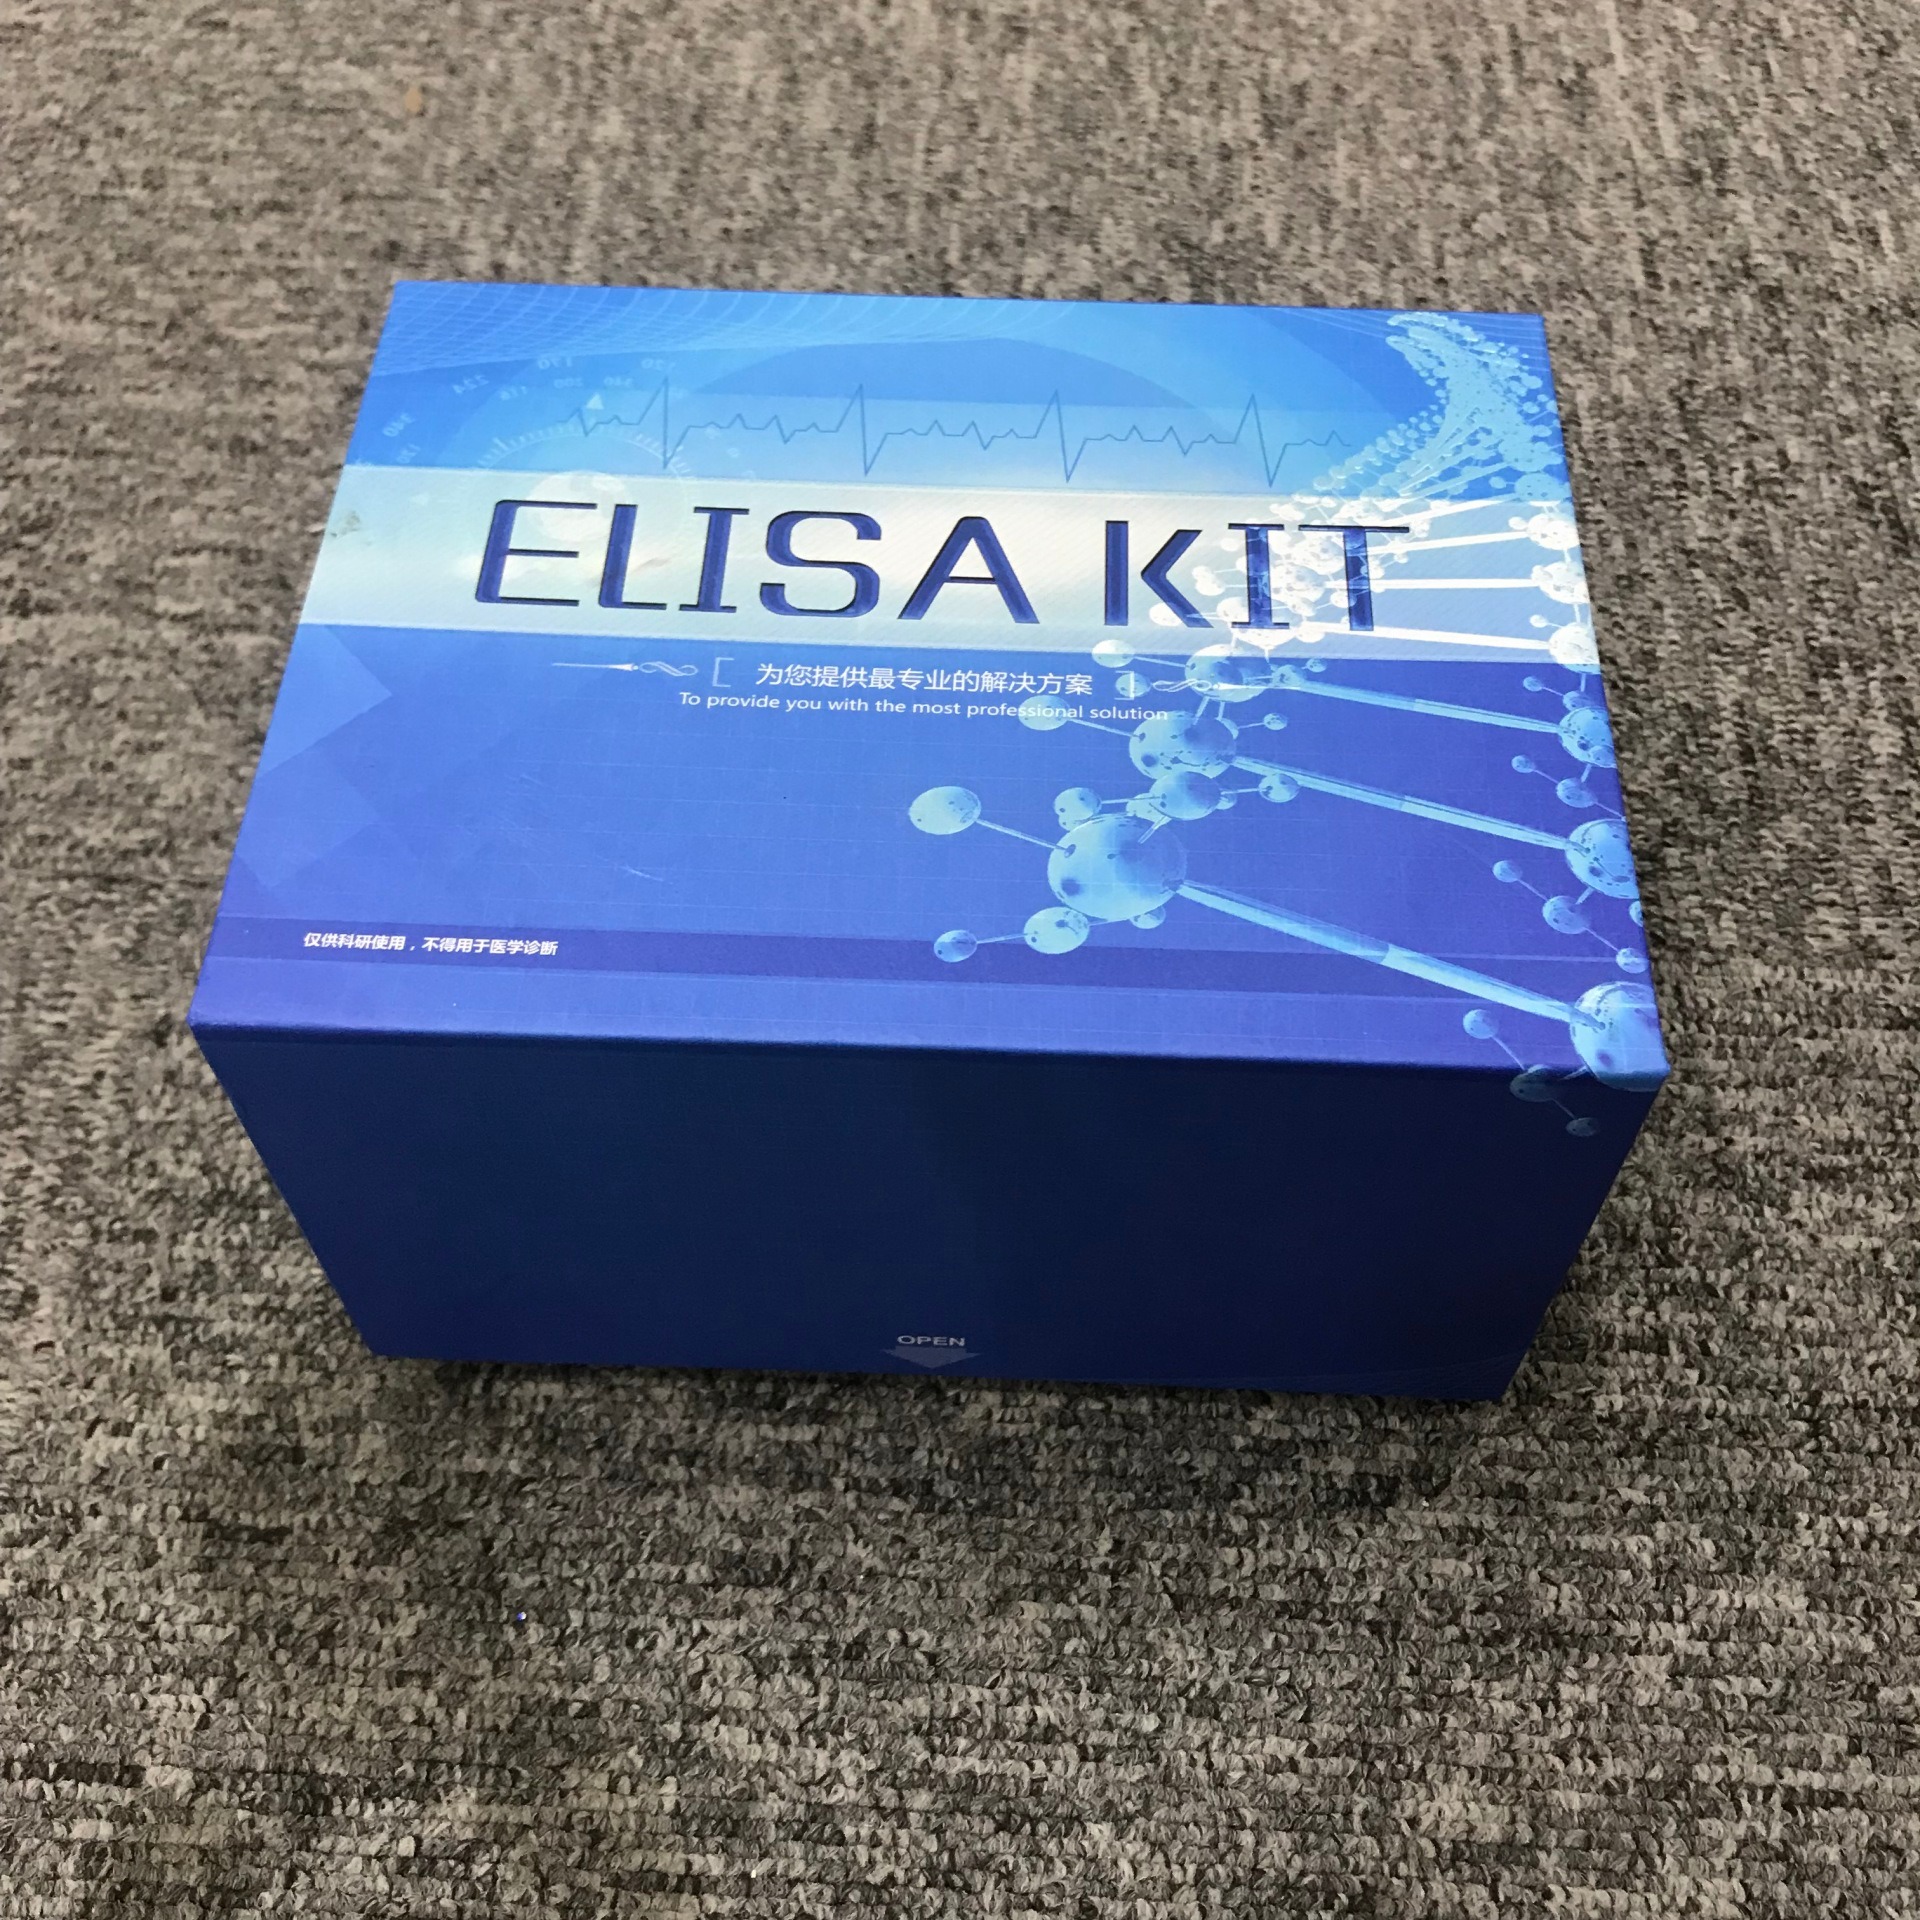 elisa试剂盒原理 细胞生长因子 白介素ELISA试剂盒 睿信生物图片